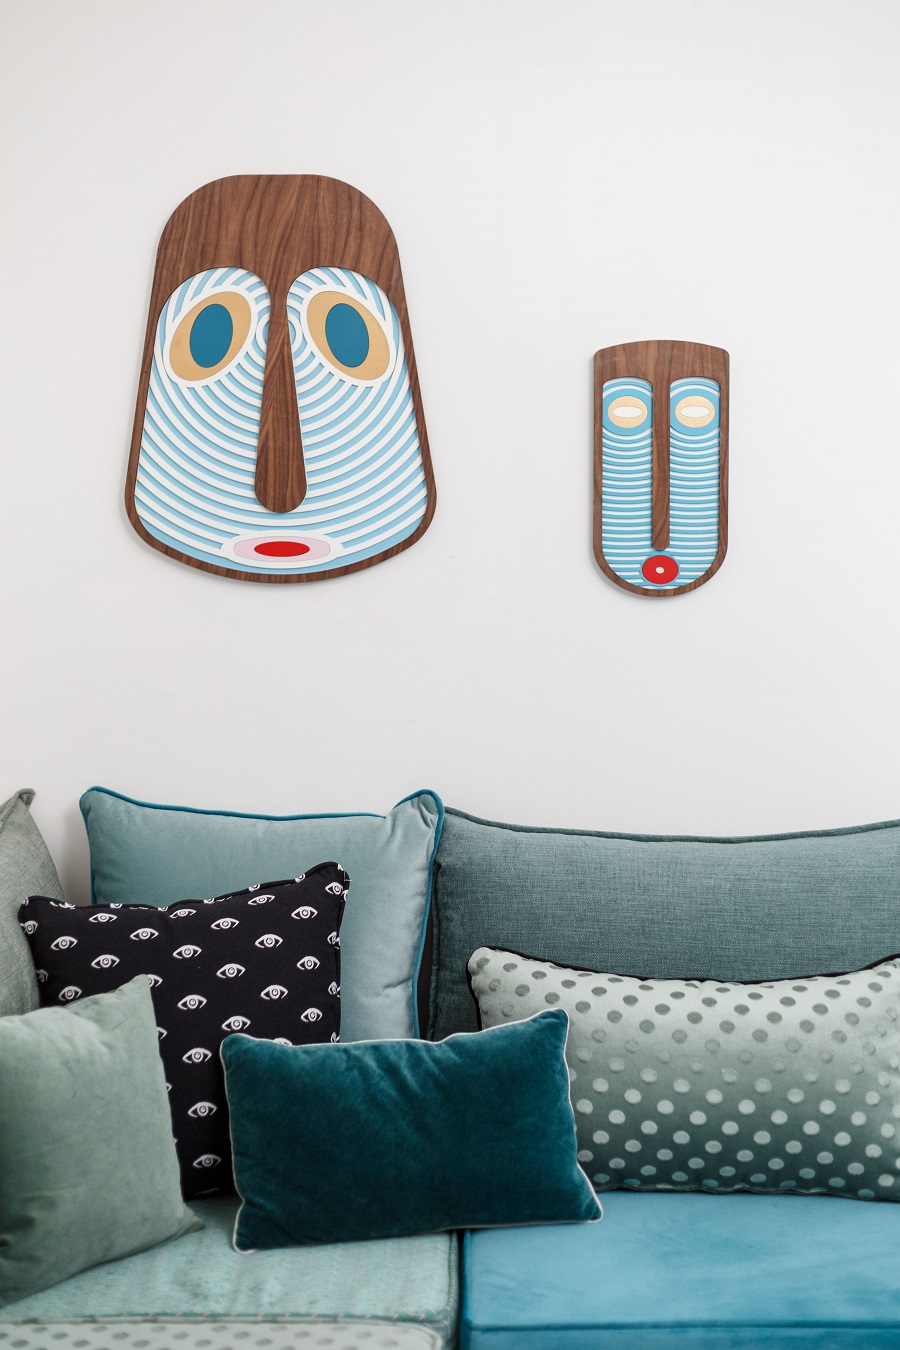 חדר משפחה עיצוב לימור אורן צילום אורית ארנון